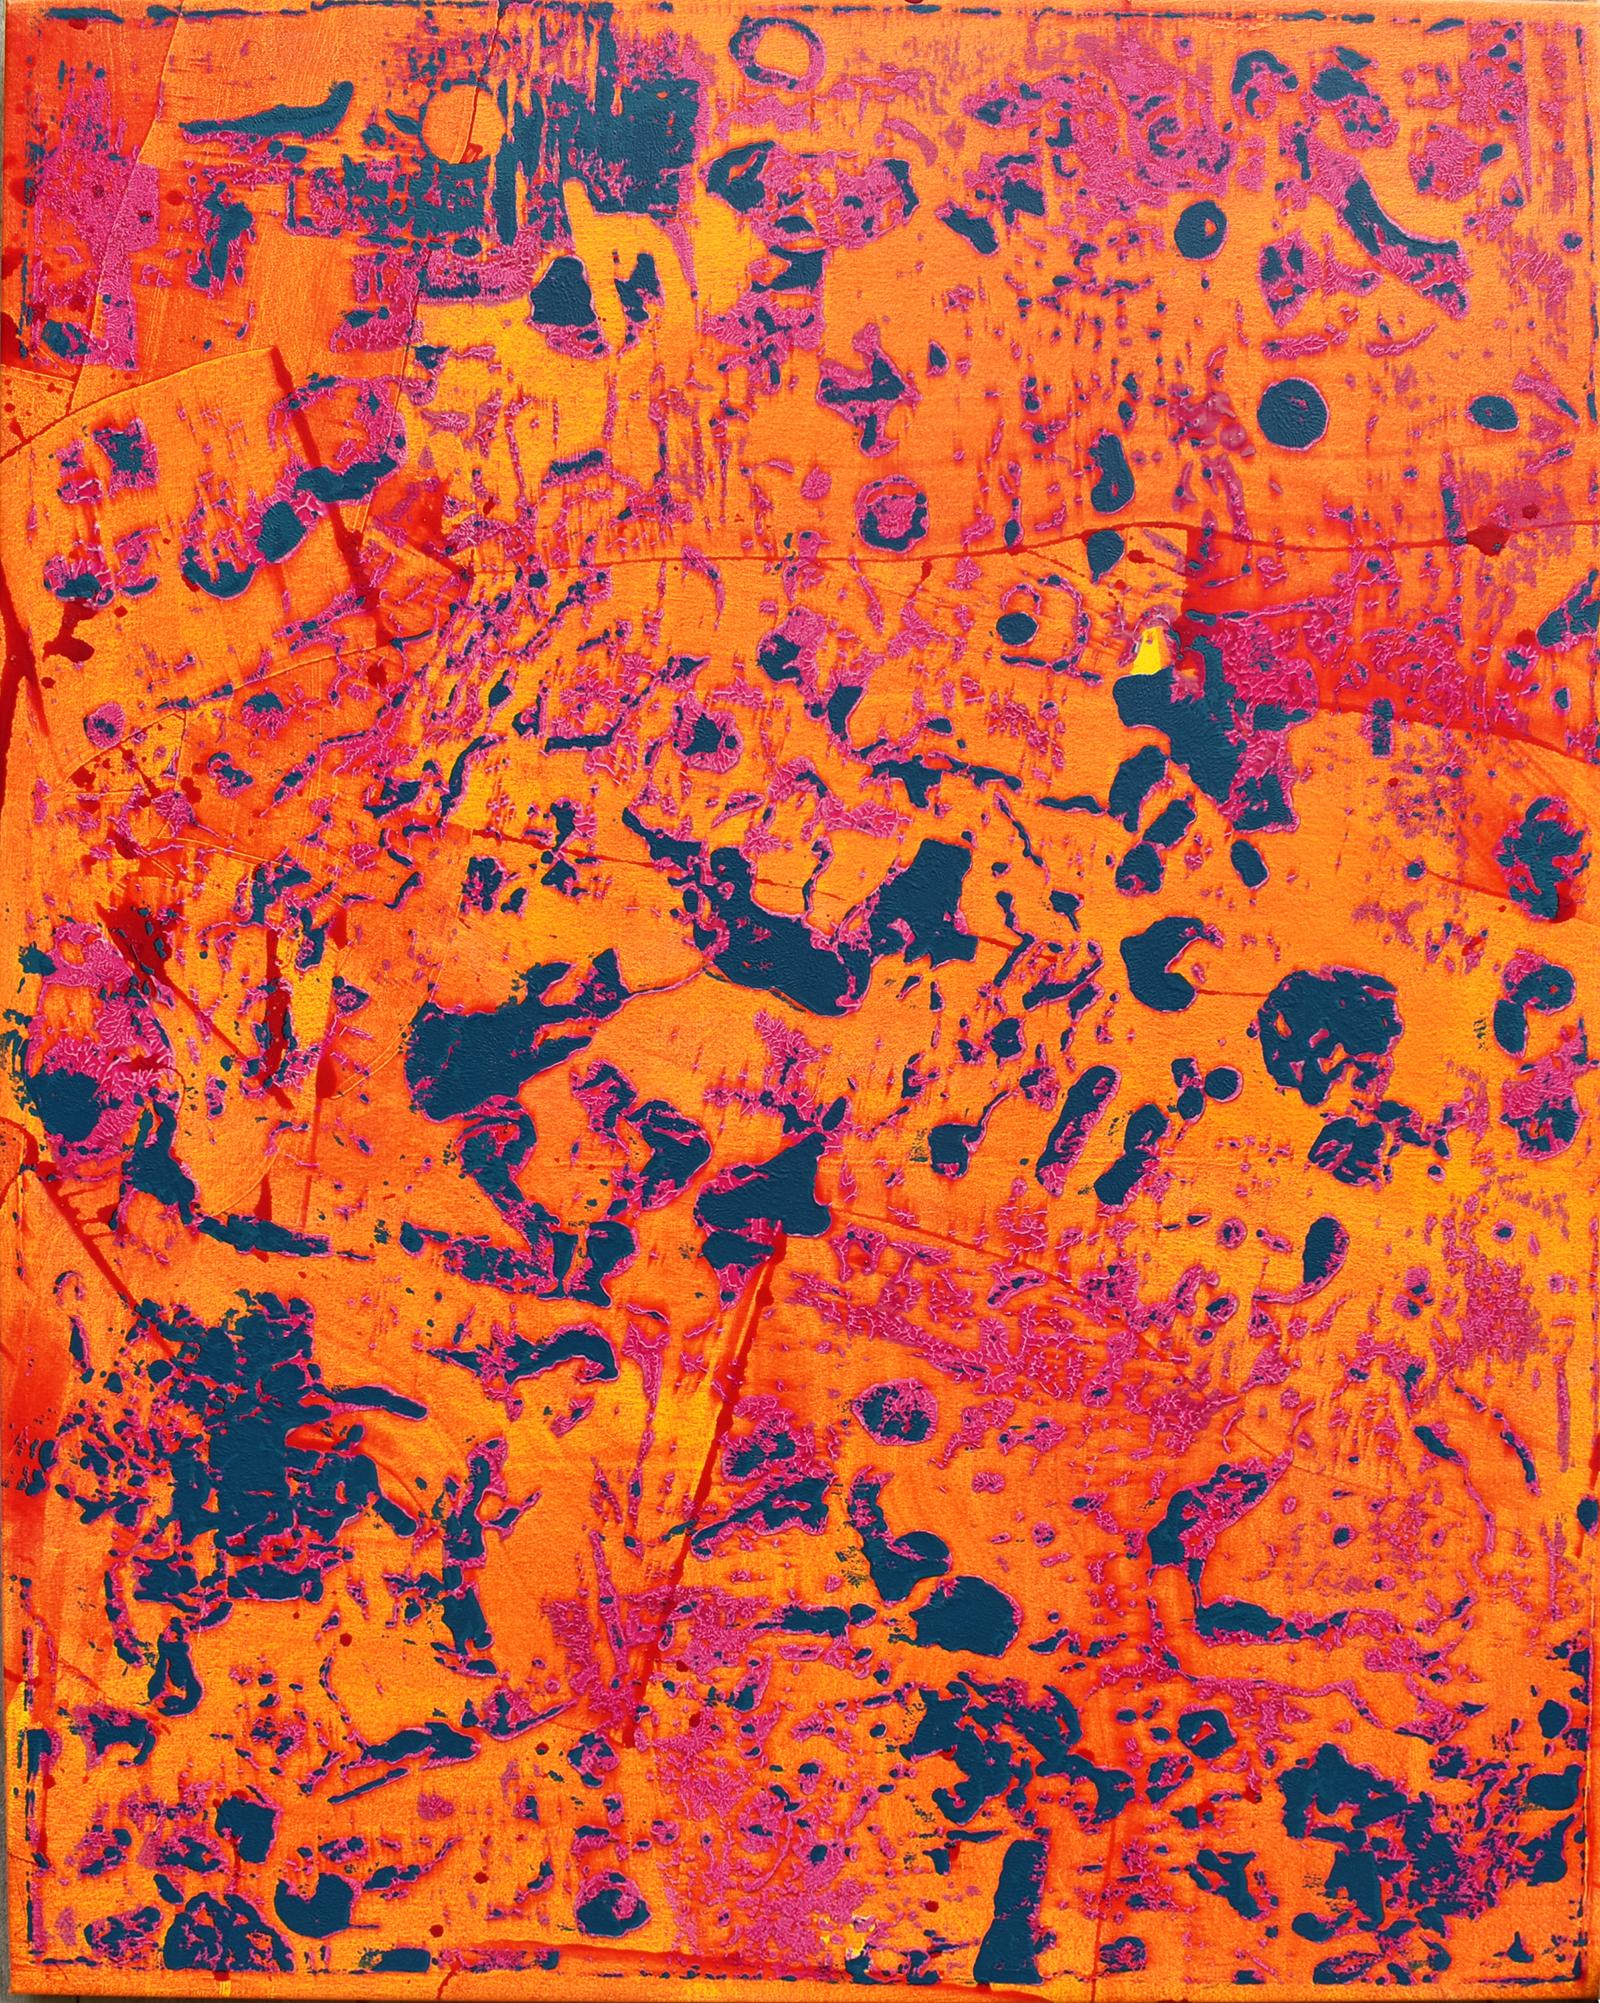 Stephen Maine Abstract Painting – Großes vertikales abstraktes Gemälde in leuchtendem Orange, Gelb, Rosa und Marineblau, P20-0105